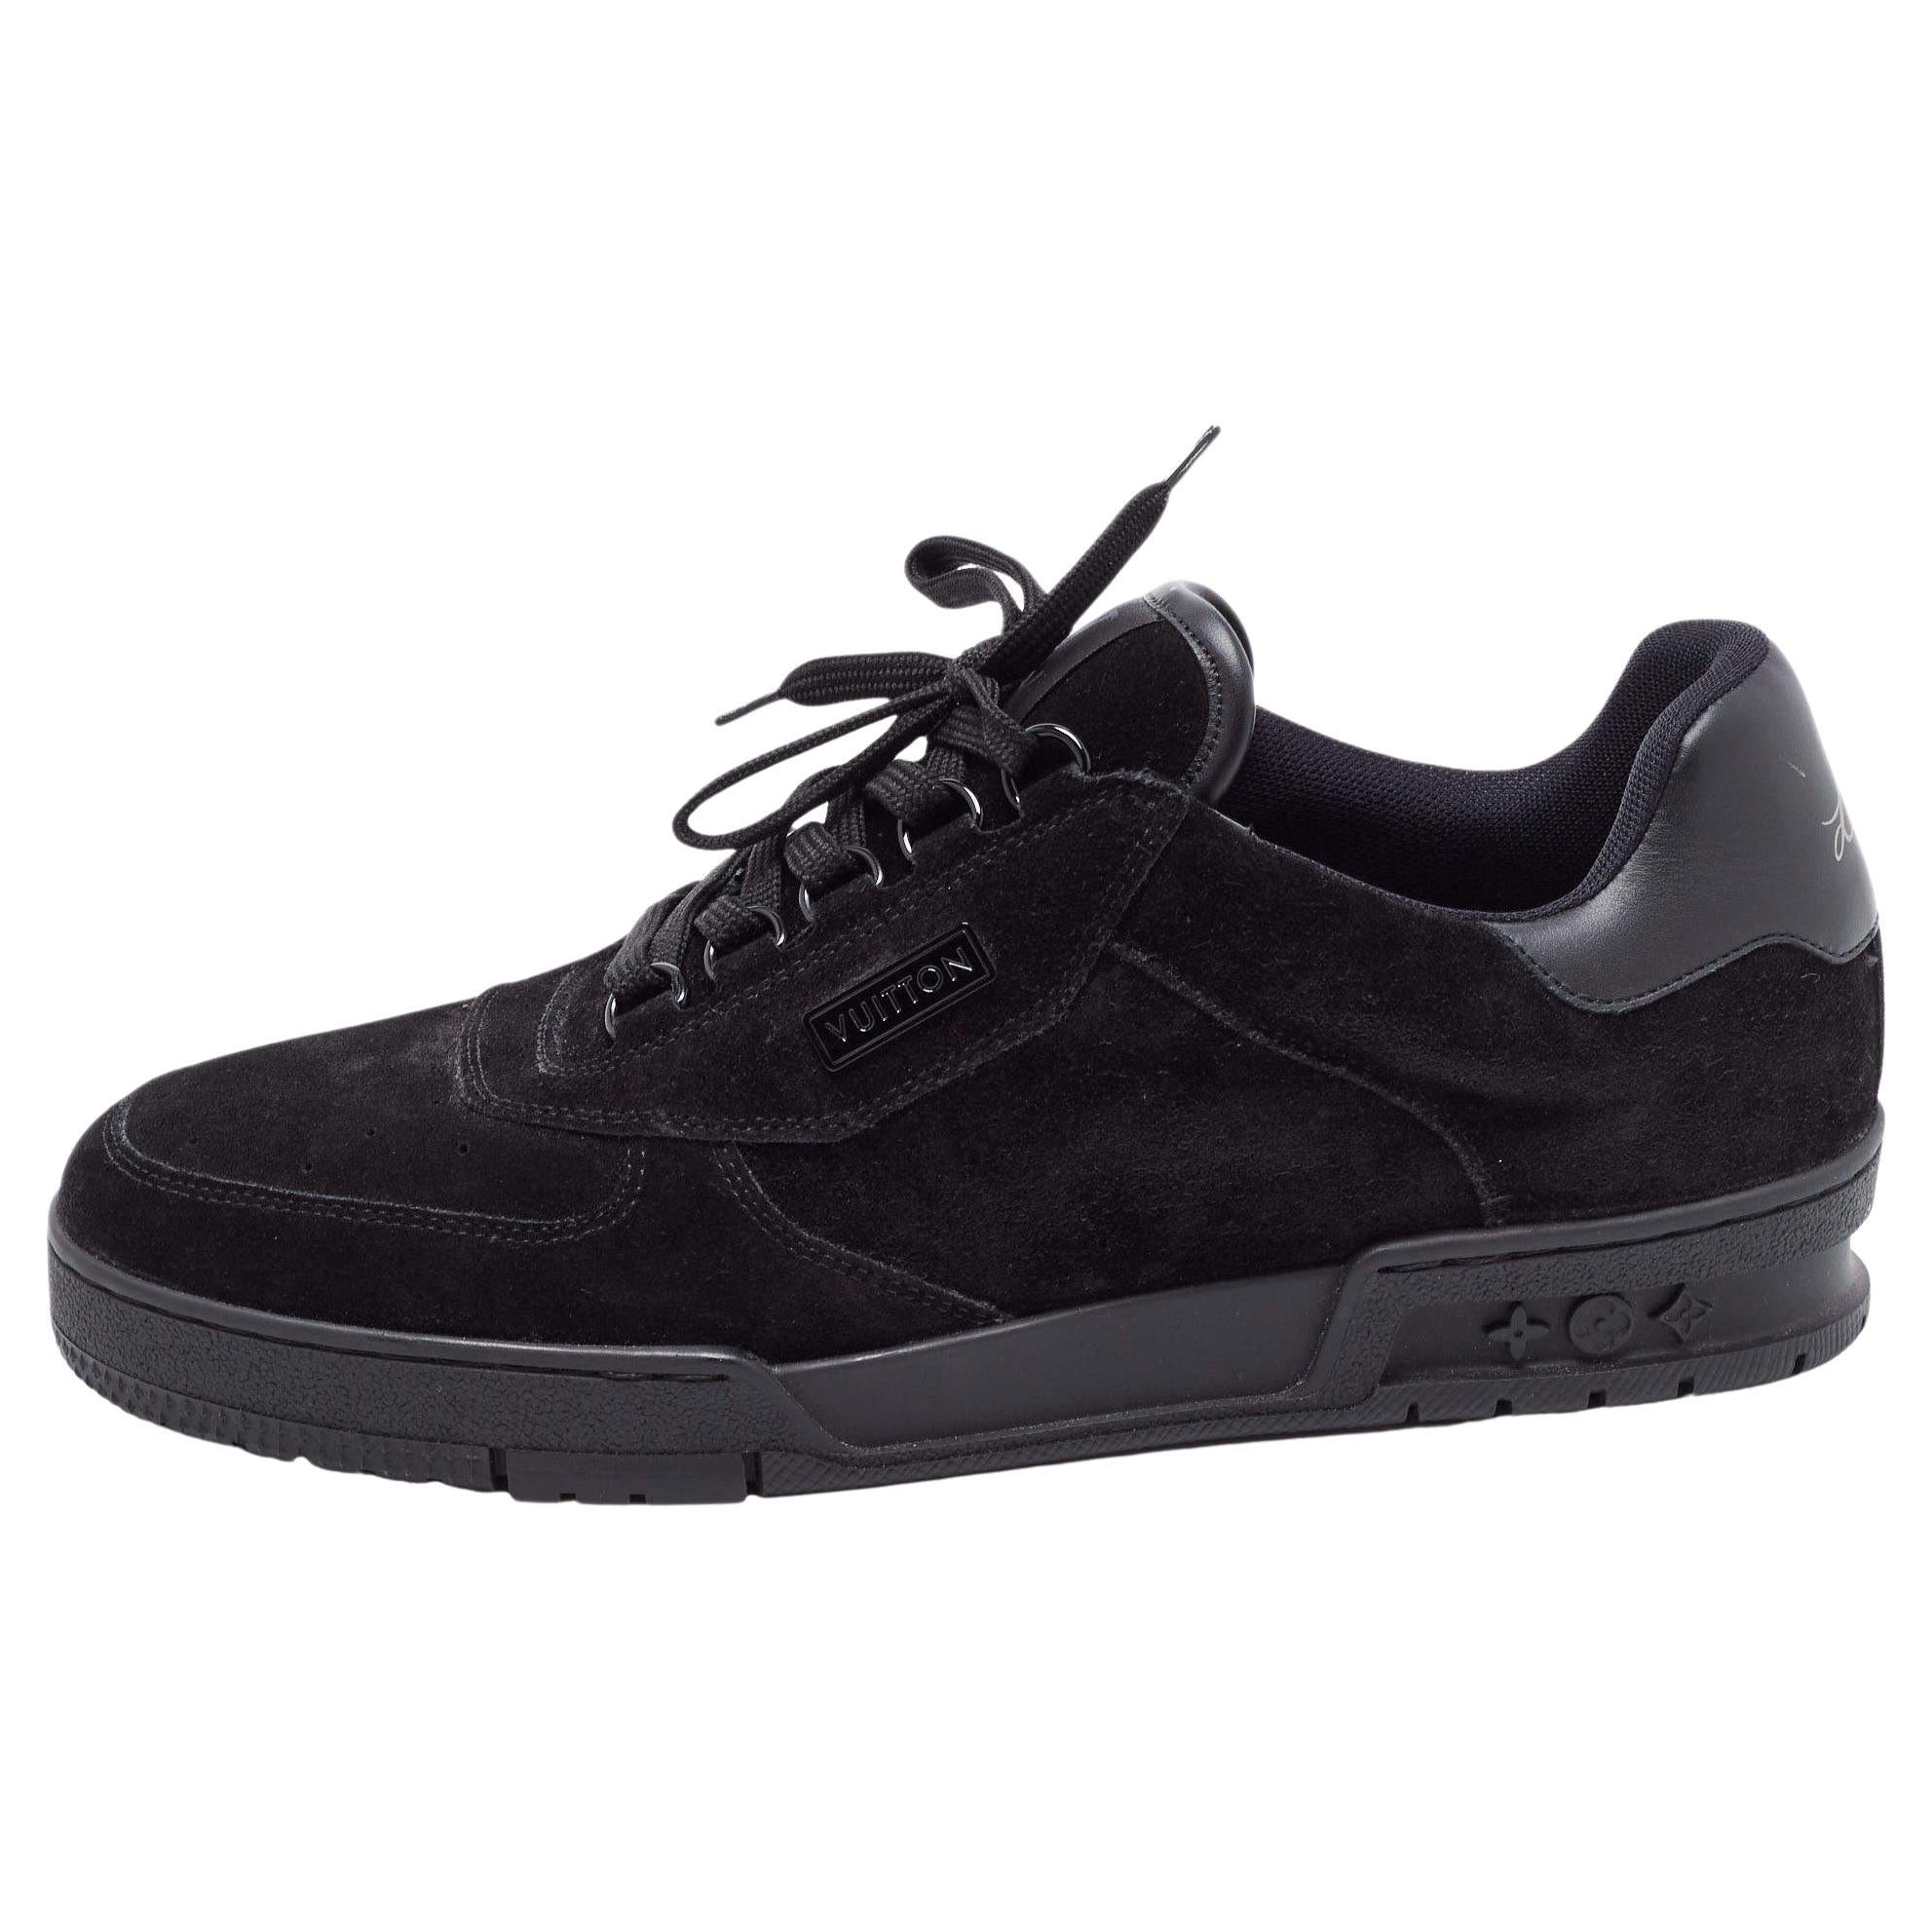 Black Louis Vuitton Men Shoes - 15 For Sale on 1stDibs  lv shoes men, black  louis vutton shoes, black lv shoes mens